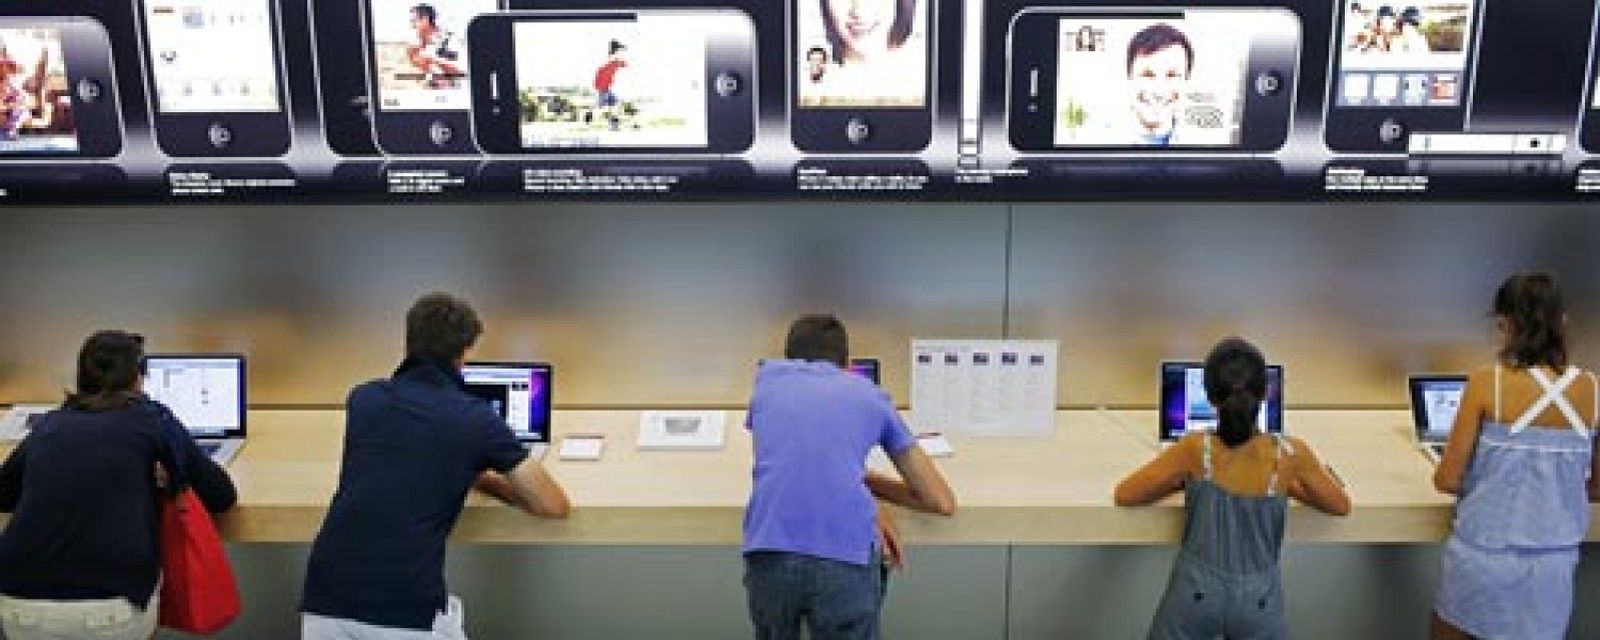 Foto: Apple también se lanza al pago por móvil en sus tiendas